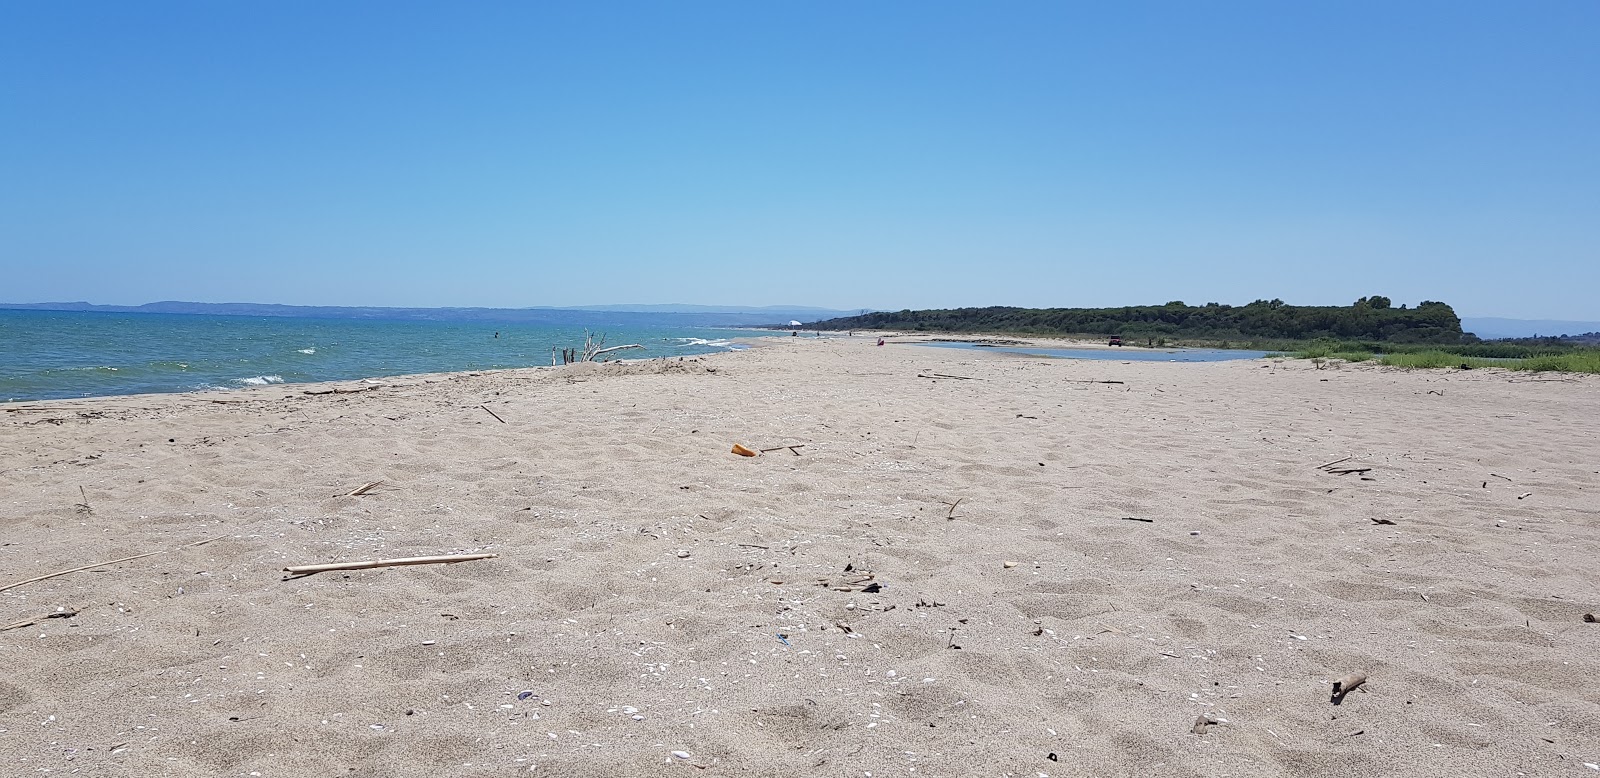 Foto av Primosole beach med brunsand yta